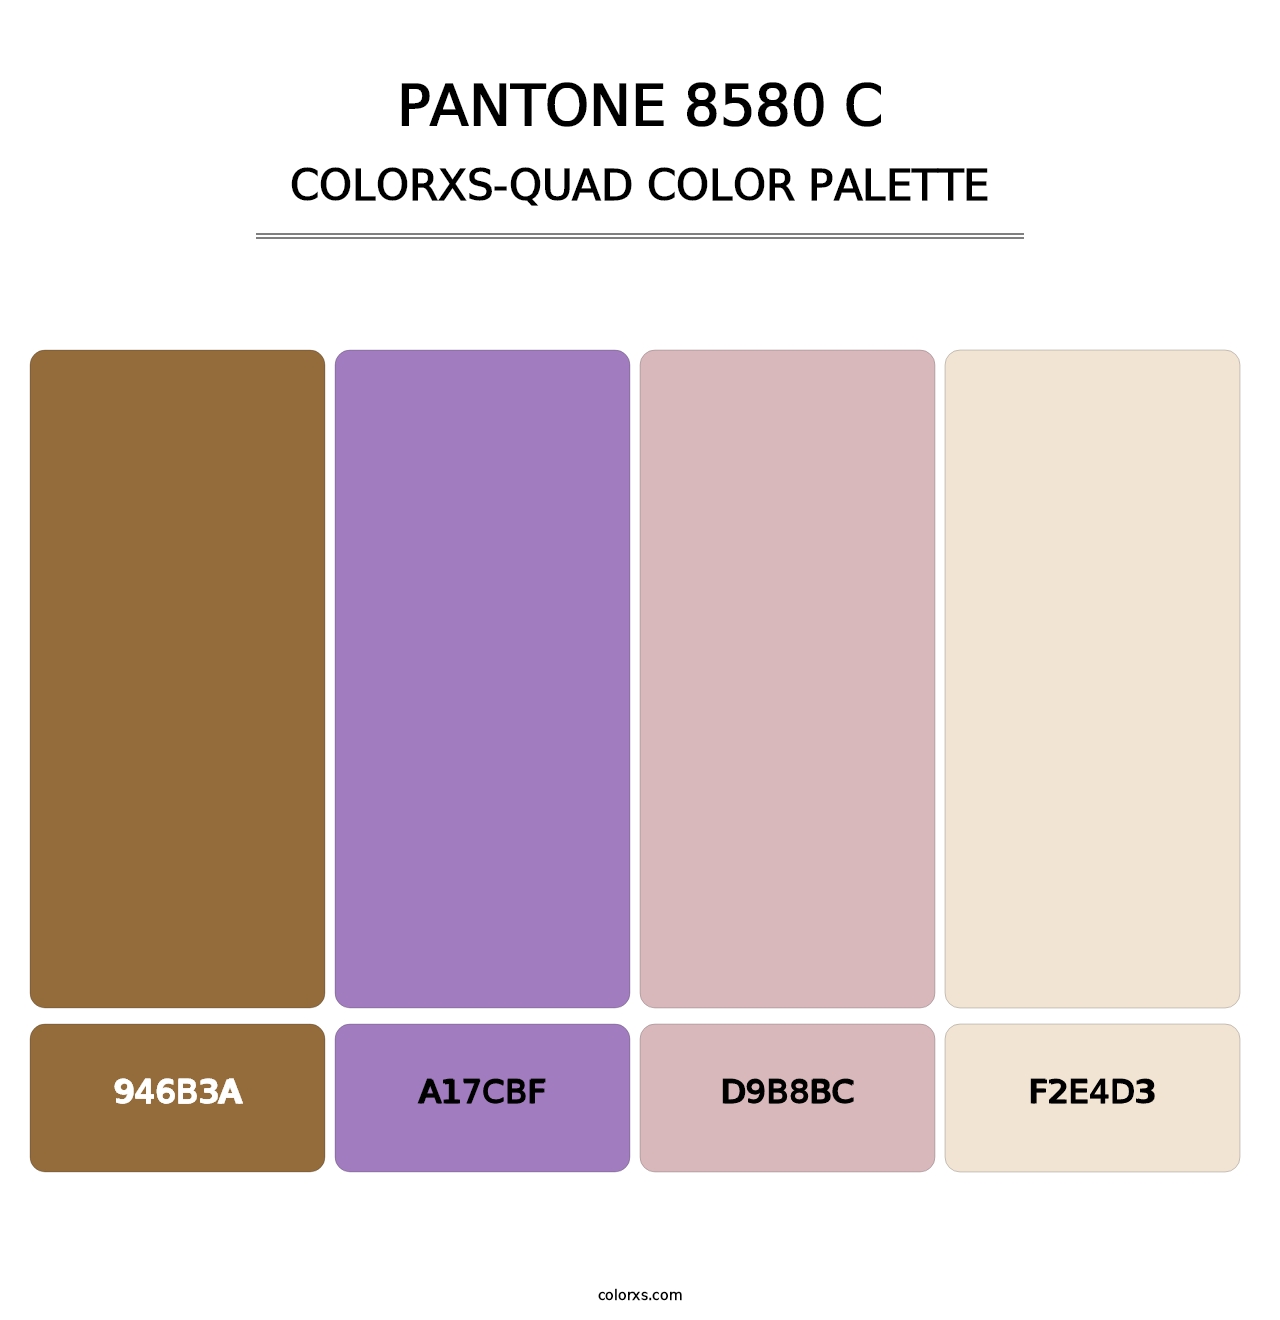 PANTONE 8580 C - Colorxs Quad Palette